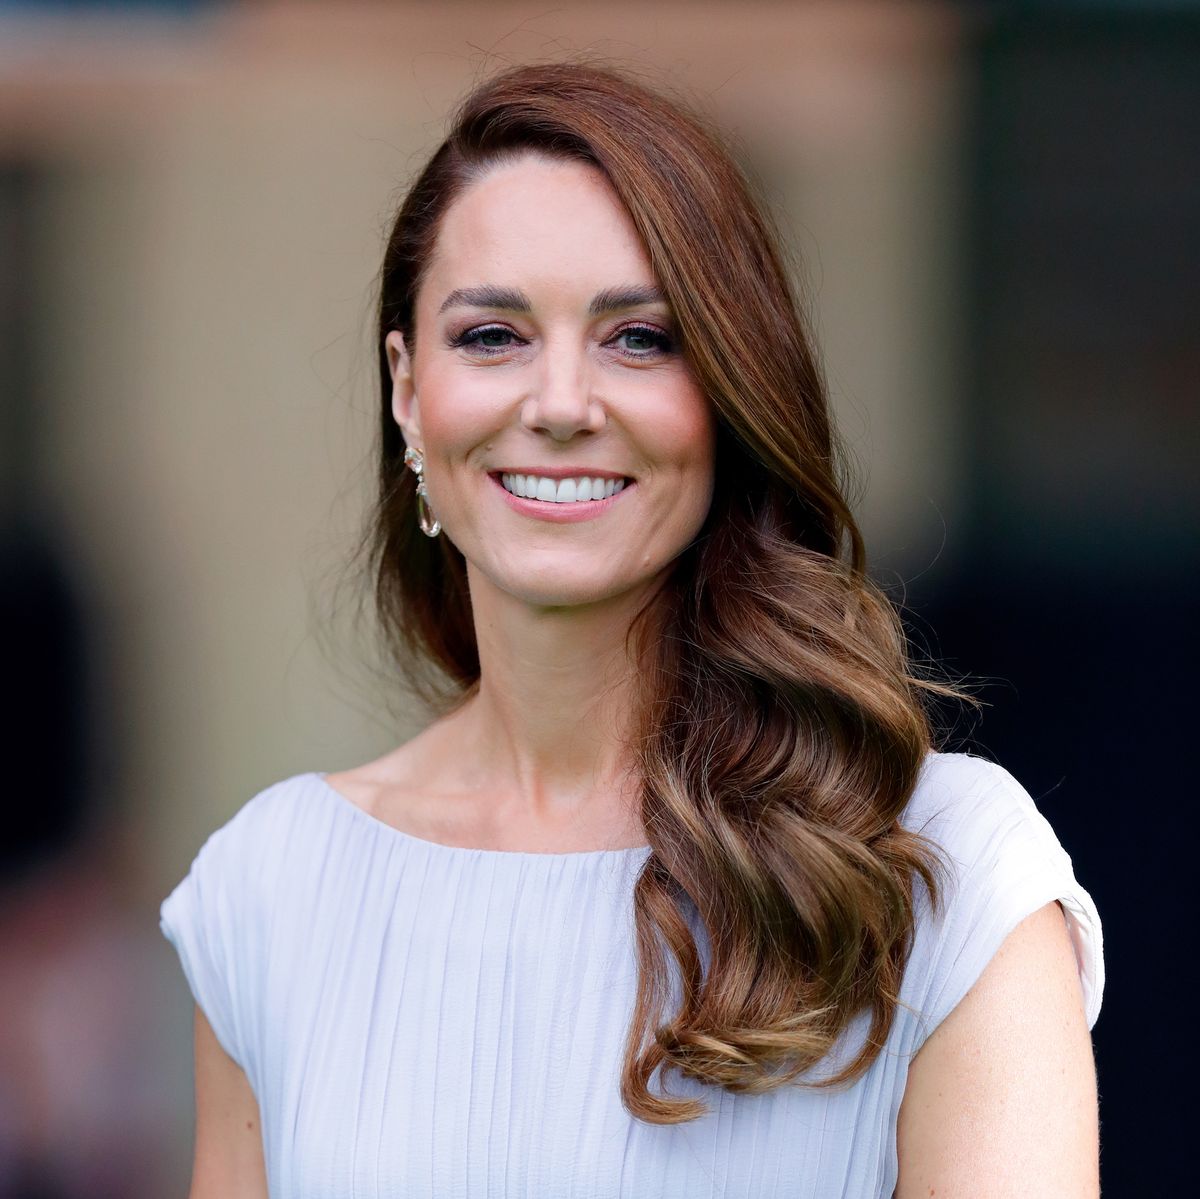 Forventer Kunstig overfladisk Kate Middleton's diet and workout routine uncovered